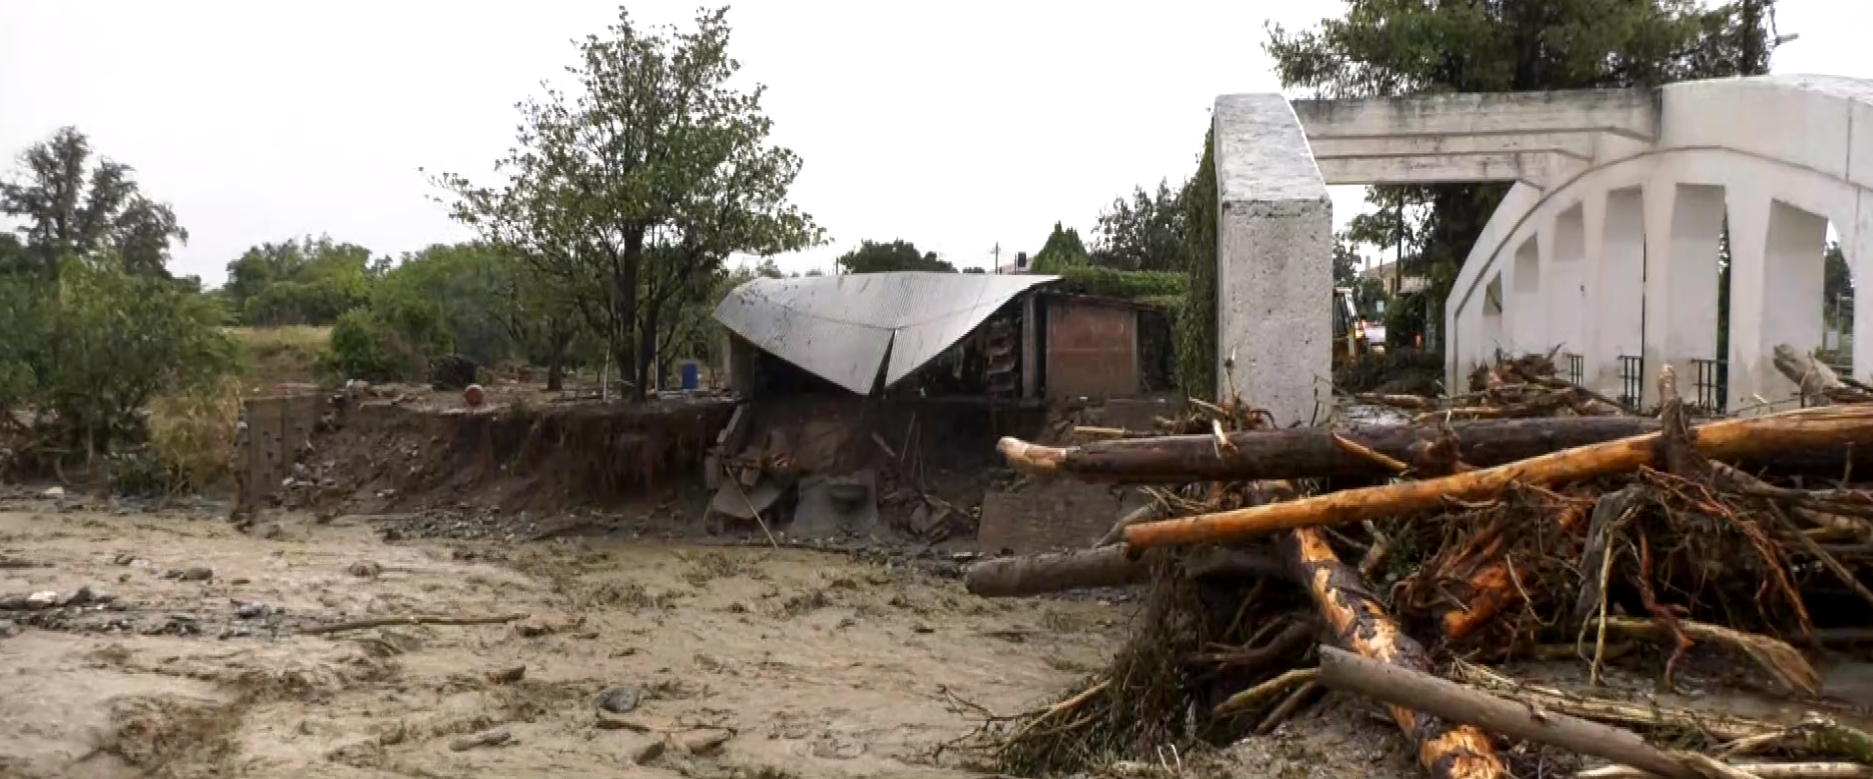 Κακοκαιρία Daniel: Δραματική η κατάσταση στα Κάτω Λεχώνια Πηλίου- Χείμαρροι “κατάπιαν” κτίσμα